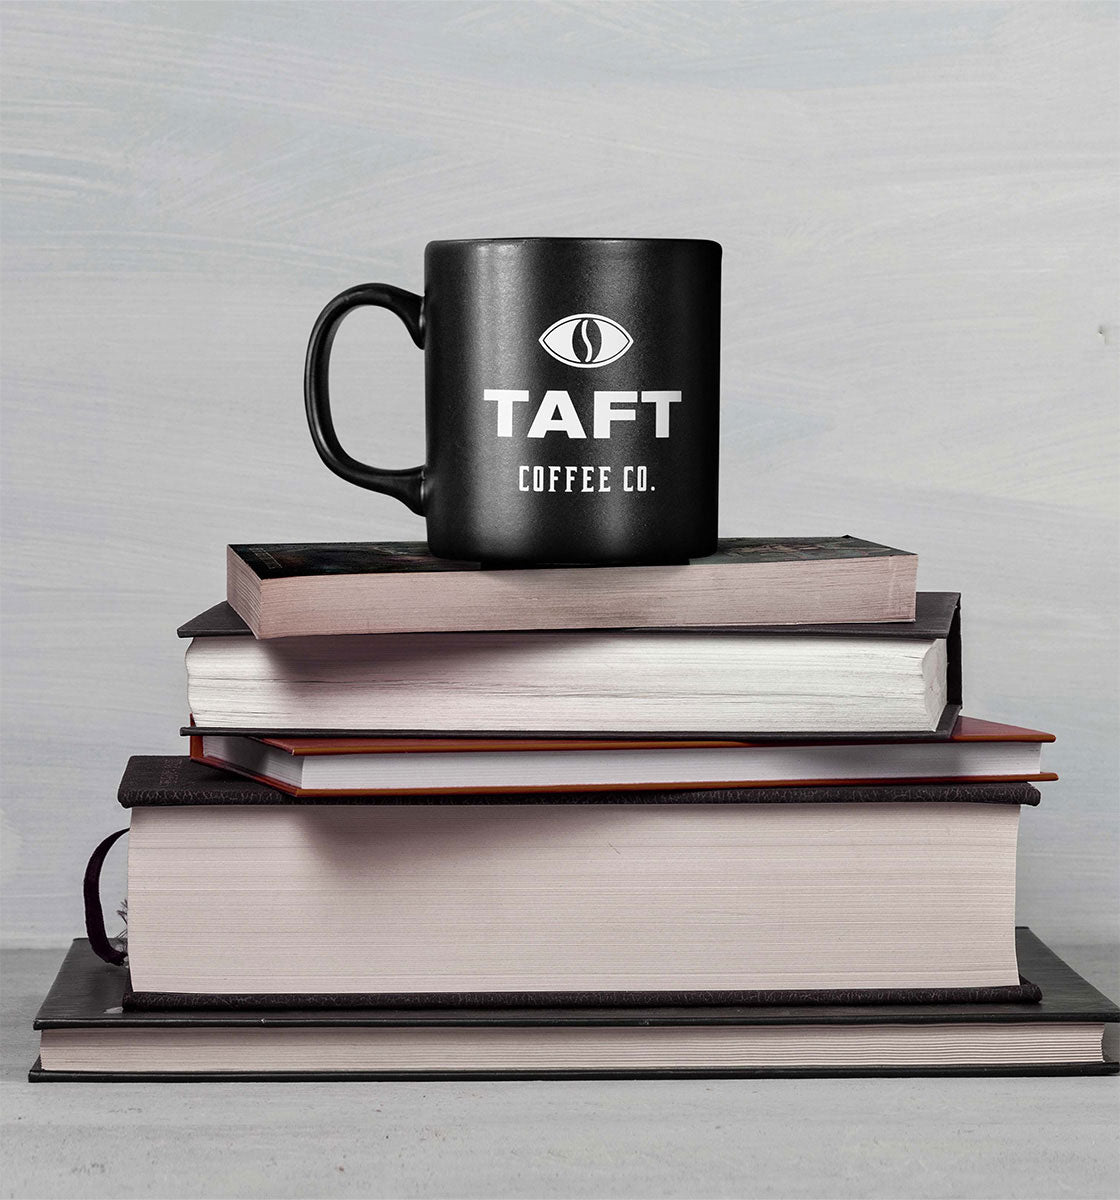 Açık renkli bir arka planda üst üste dizilmiş beş kitabın üzerine yerleştirilmiş TAFT Kupa.